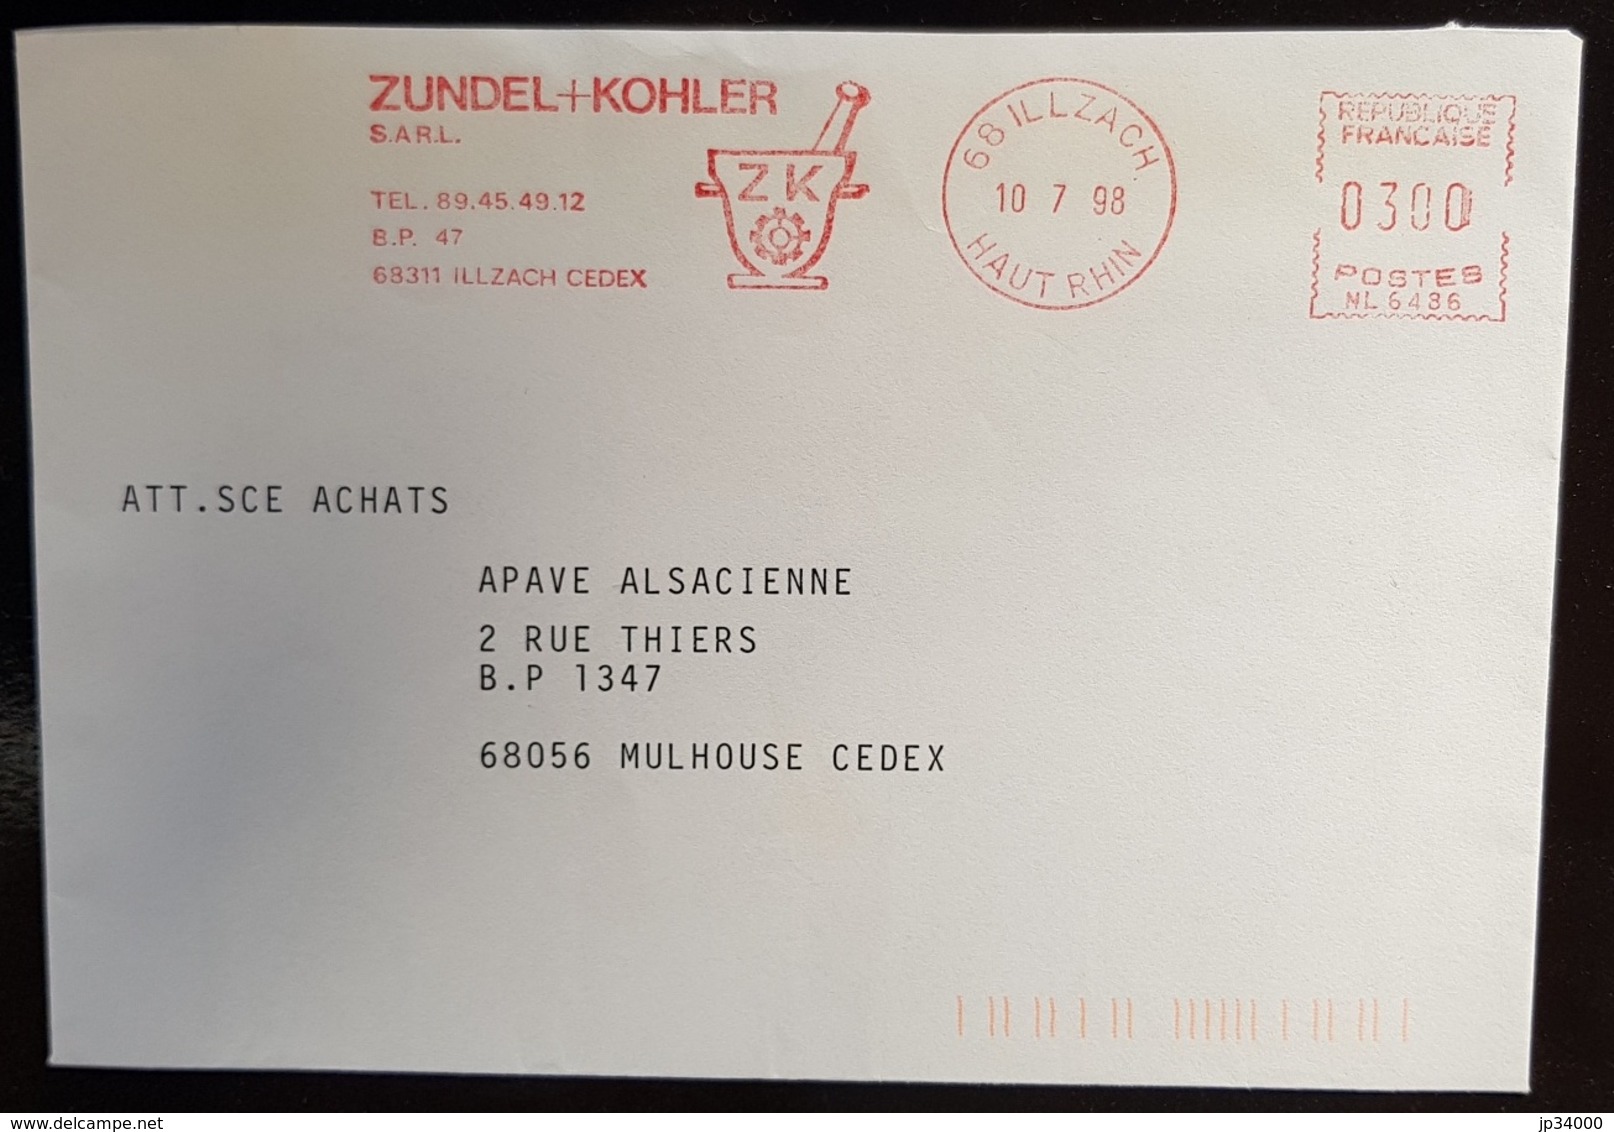 FRANCE Phamarcie, Medecine, Empreinte Mecanique (EMA) ZUNDEL KOHLER En 1998 - Apotheek